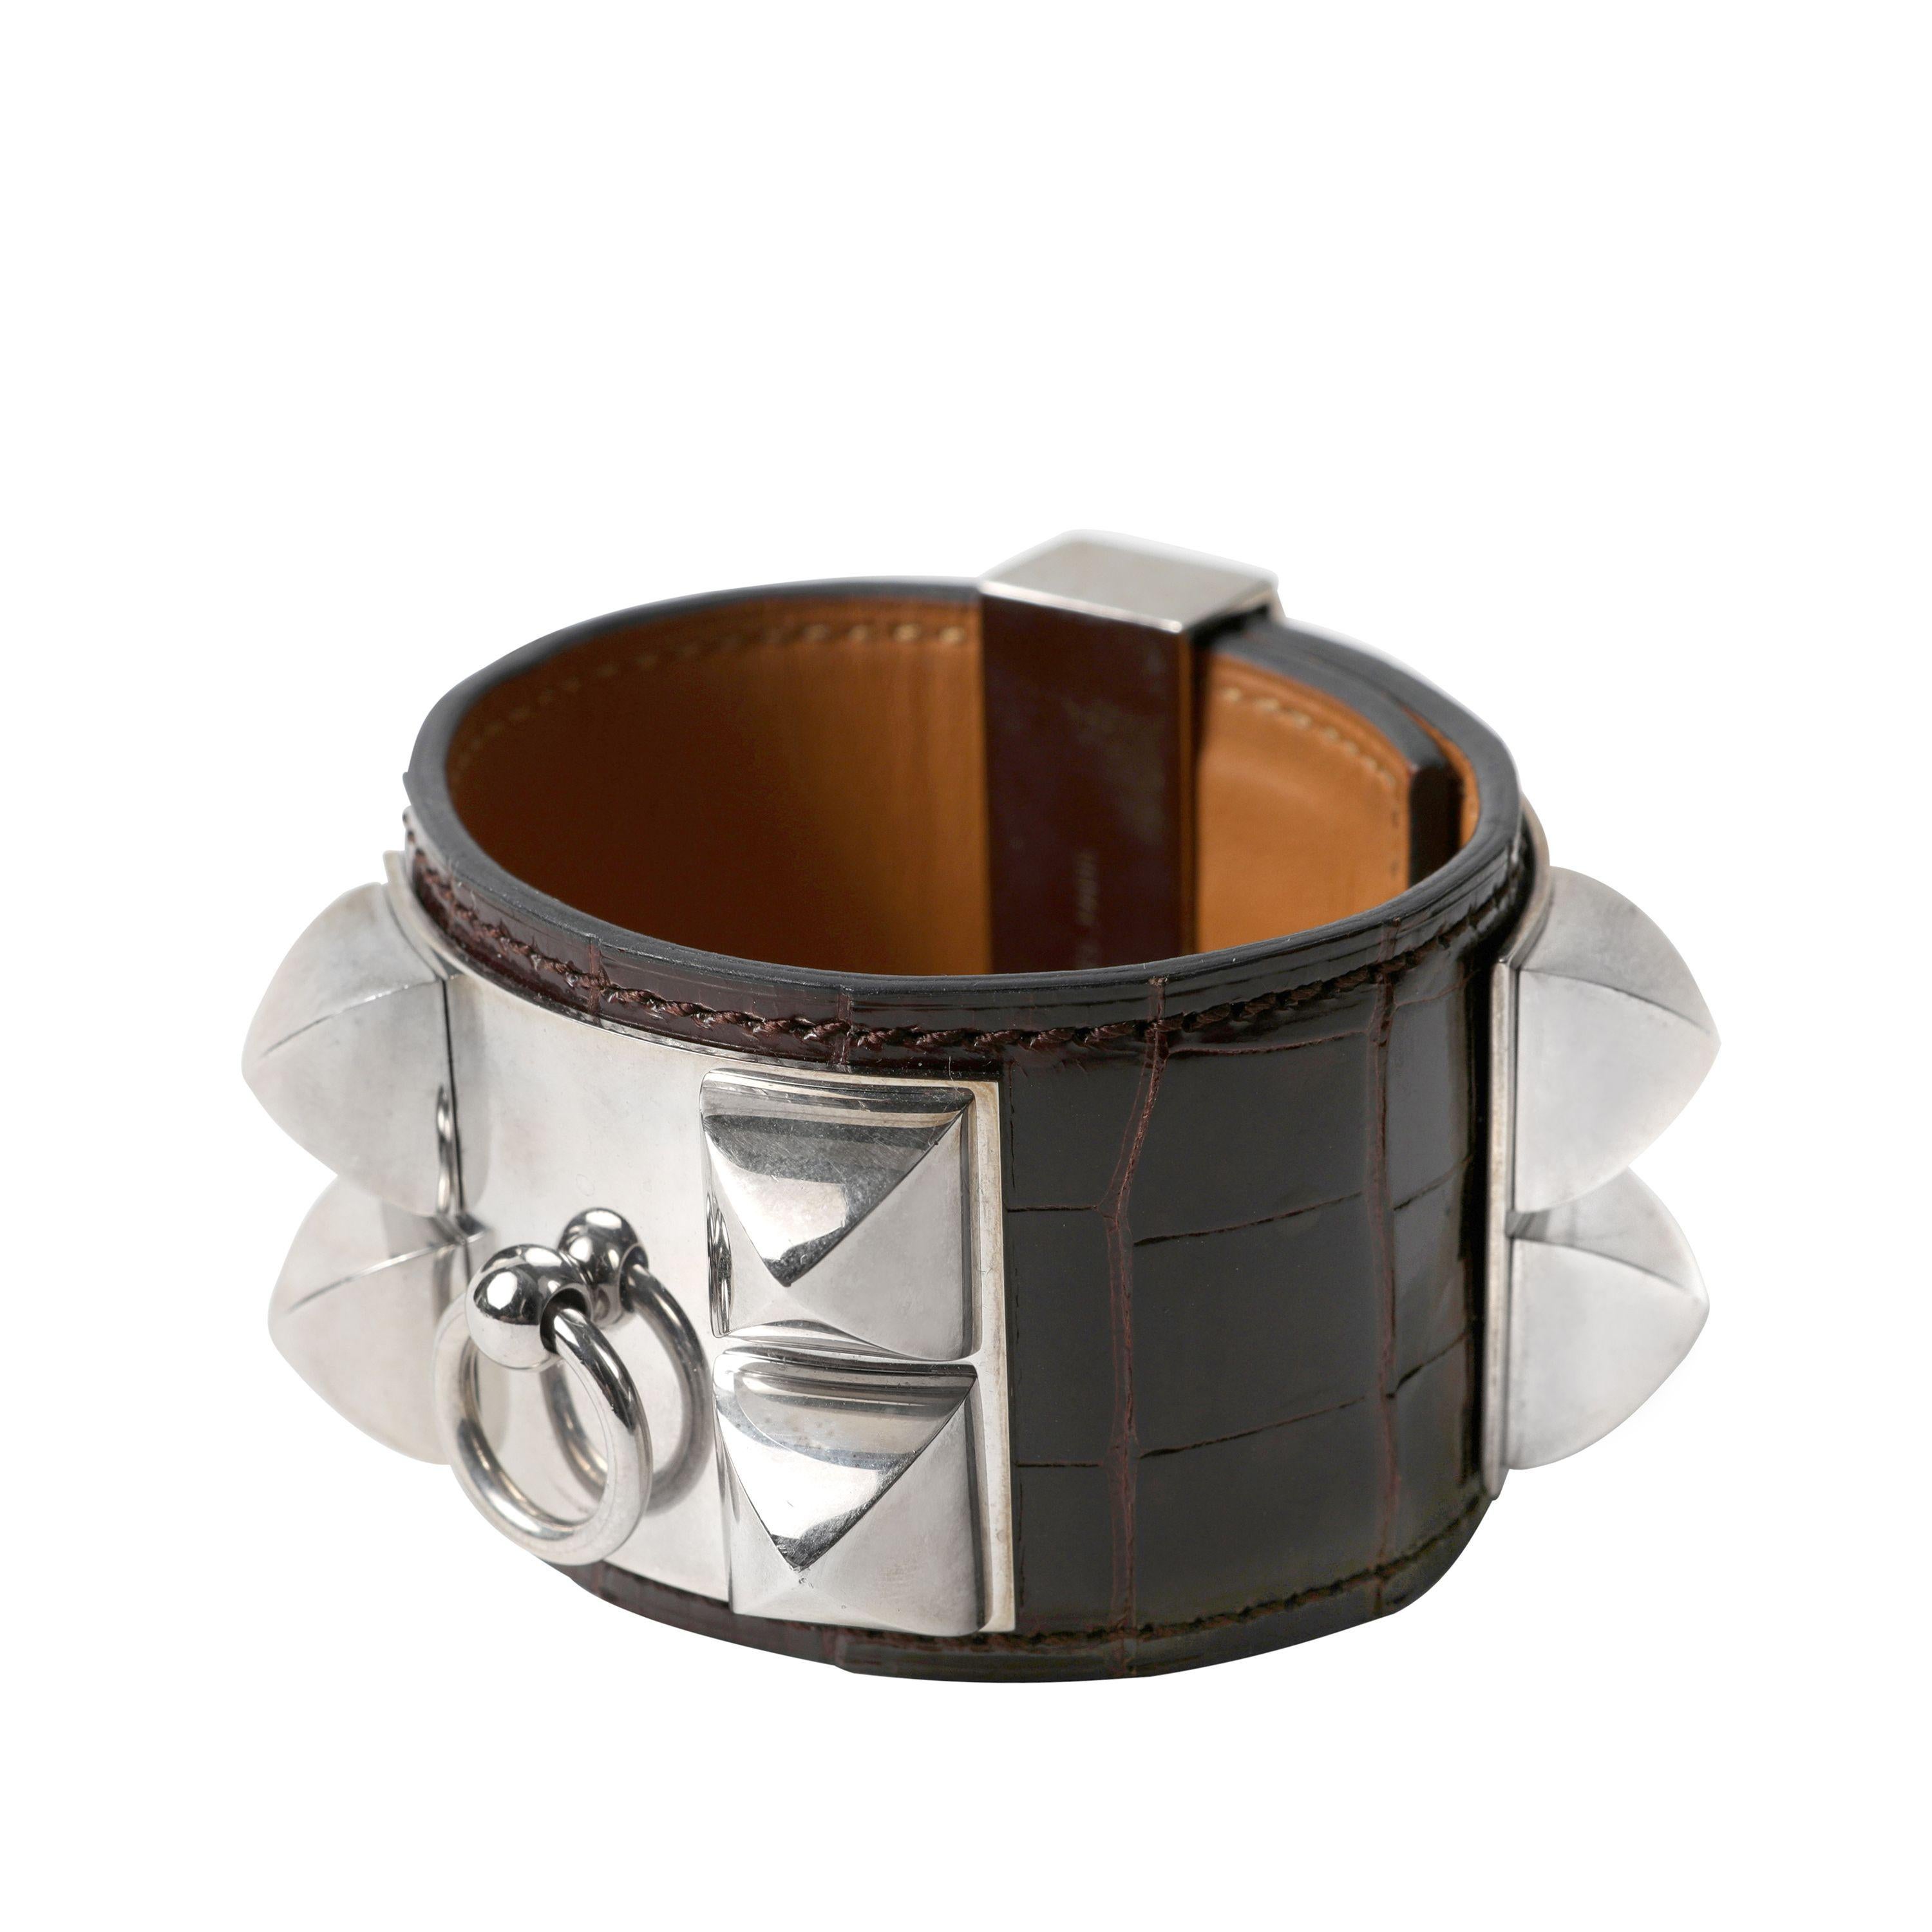 Cet authentique bracelet Collier de Chien en alligator brun chocolat d'Hermès est en parfait état.  L'emblématique Icone d'Hermès ajoute une touche de chic à tout ensemble.  Peau d'alligator marron chocolaté avec anneau et clous pyramidaux en